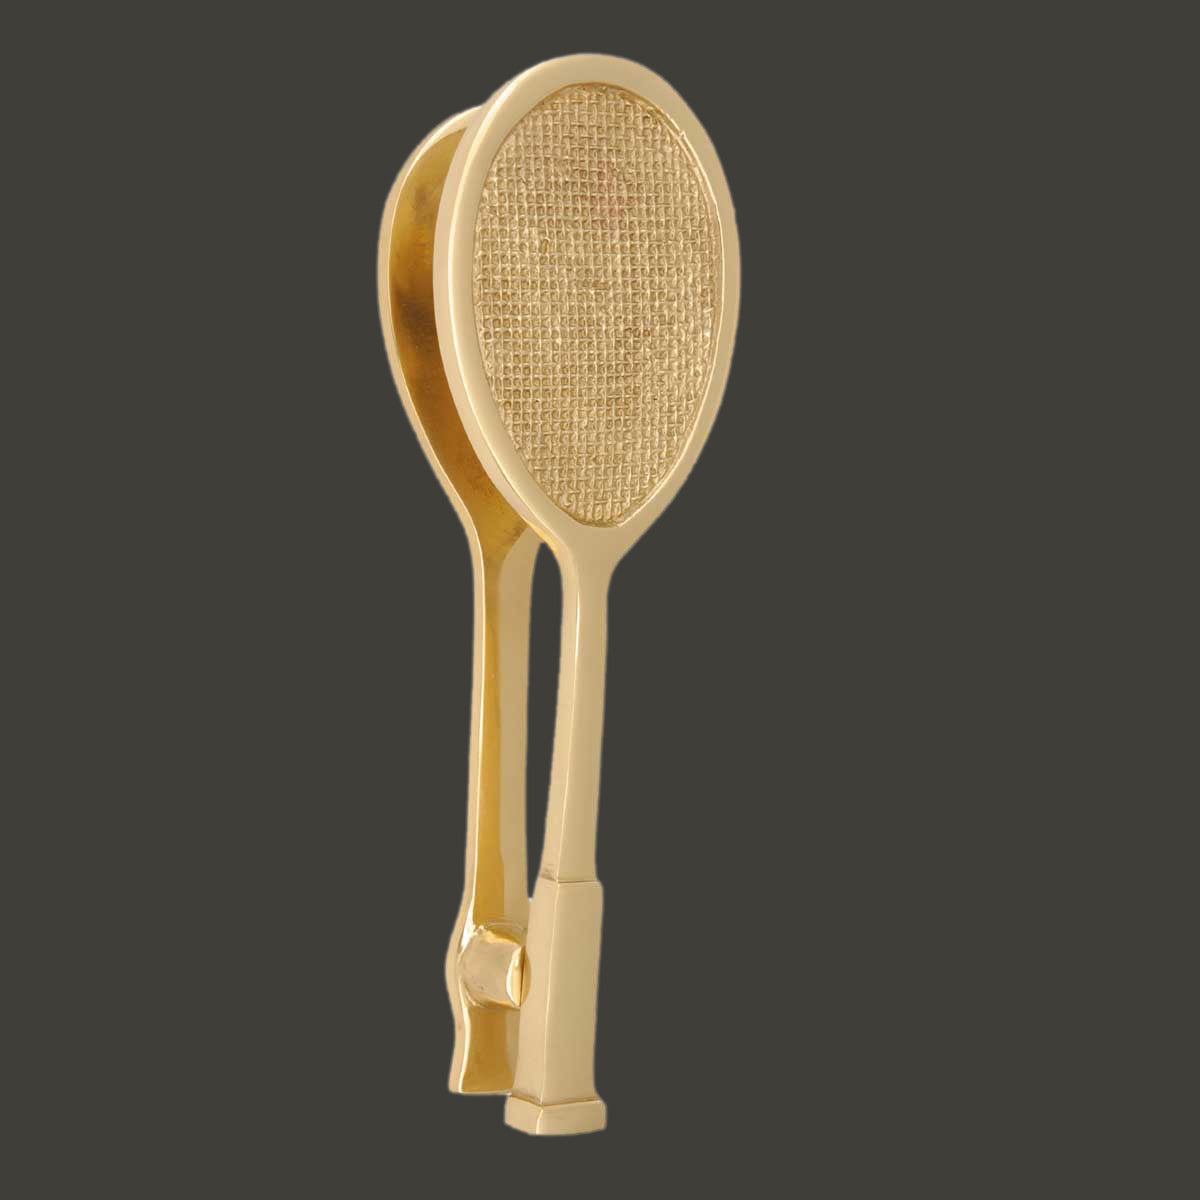 Solid Brass Door Knocker Tennis Racket Badminton 7.5"H